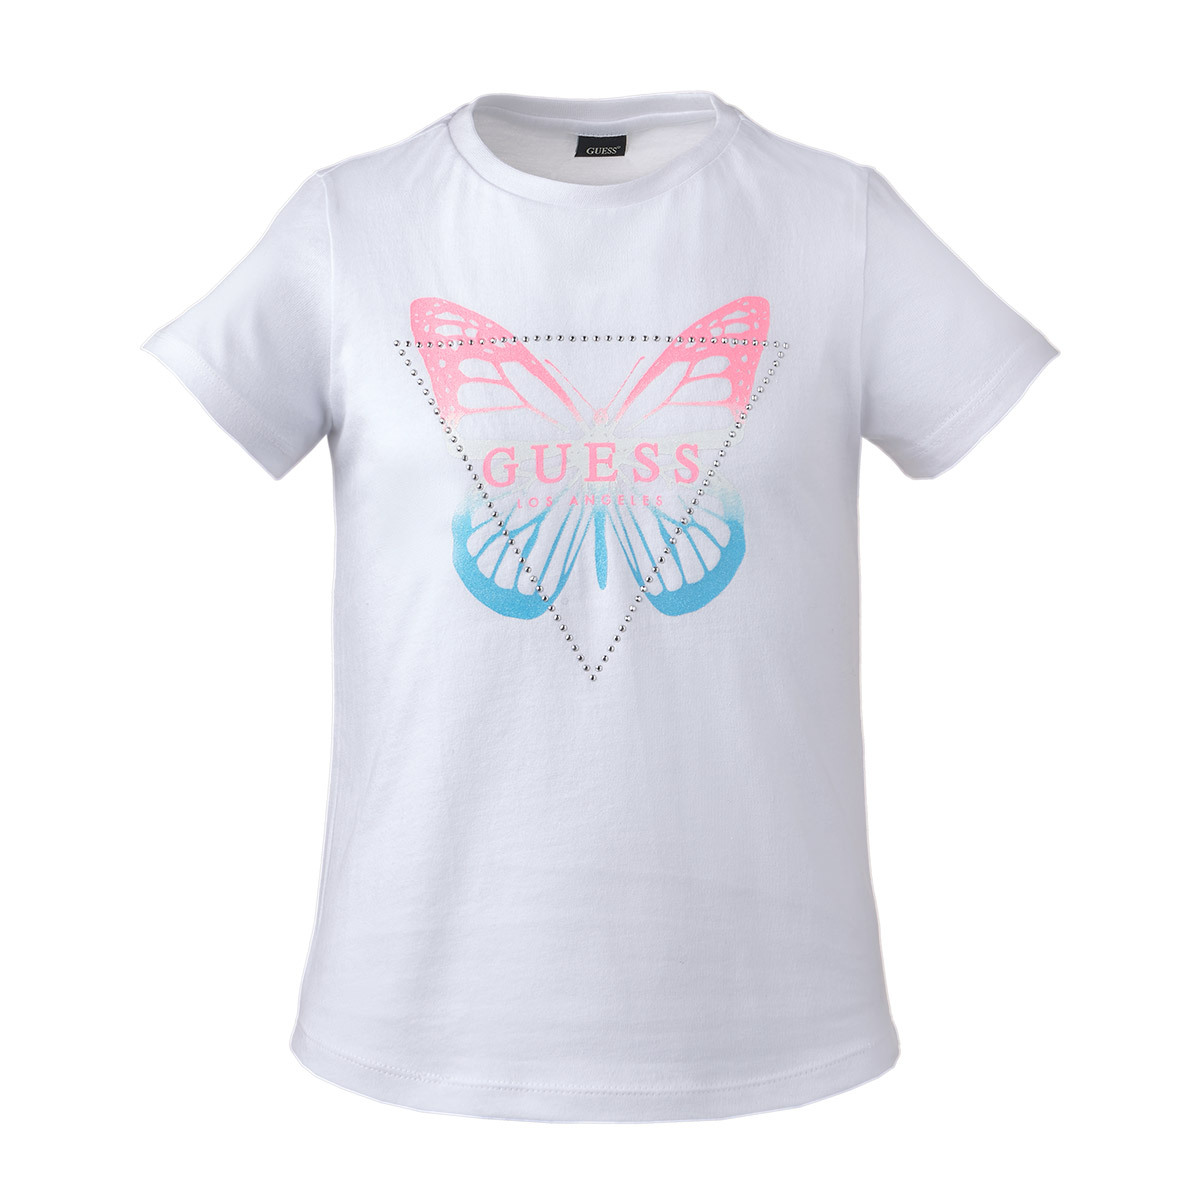 게스 키즈 반소매 로고 티셔츠 - 화이트 나비 로고